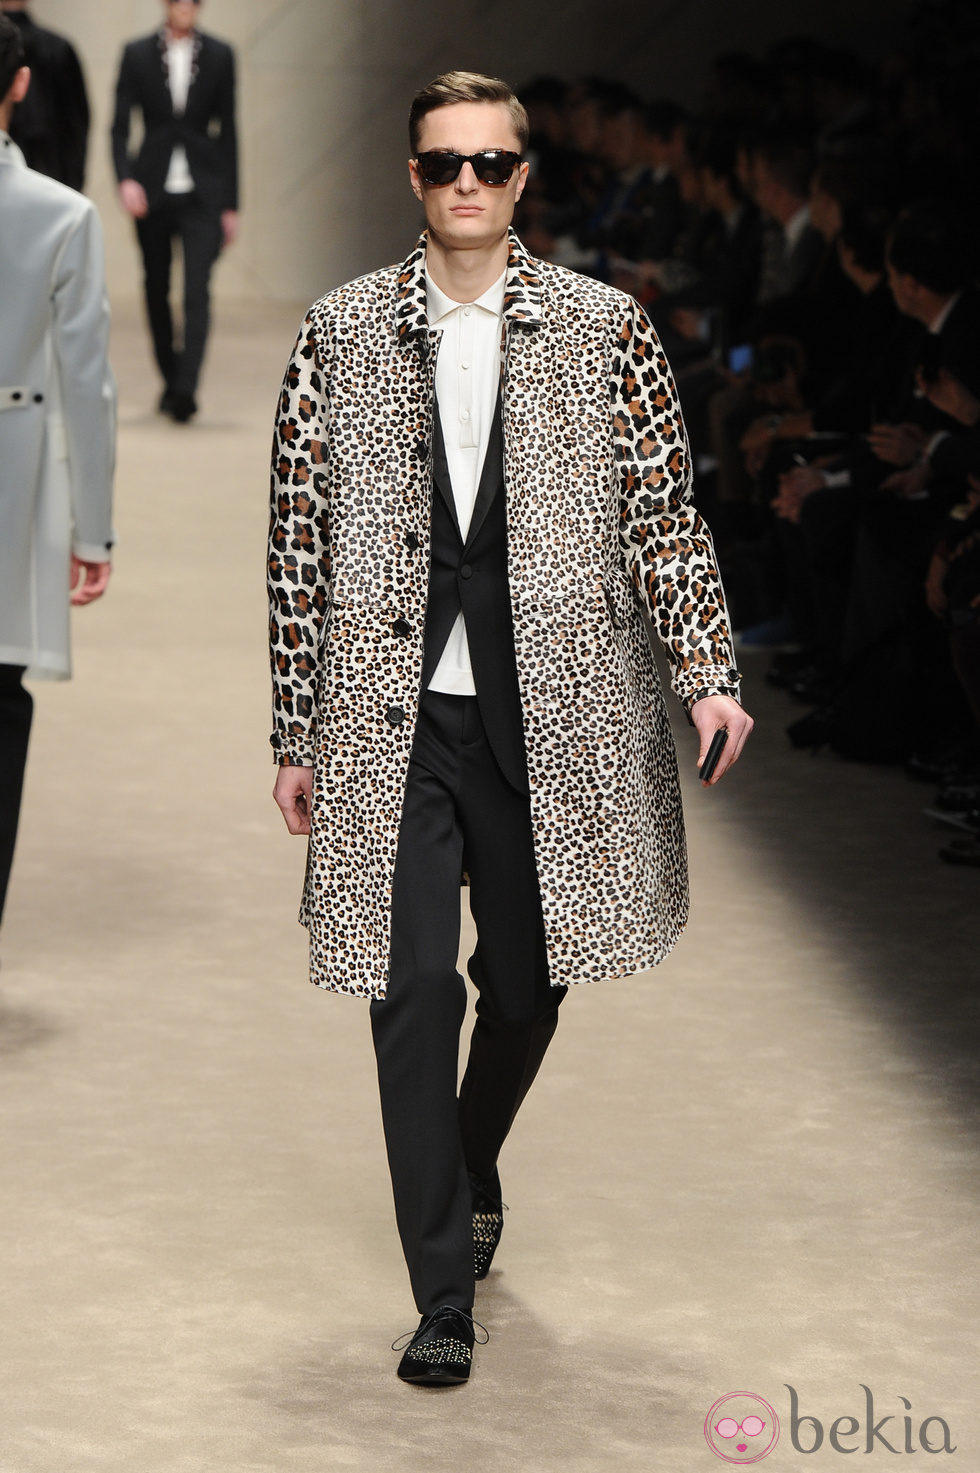 Abrigo con estampado de leopardo de Burberry en la Semana de la Moda Masculina de Milán otoño/invierno 2013/2014